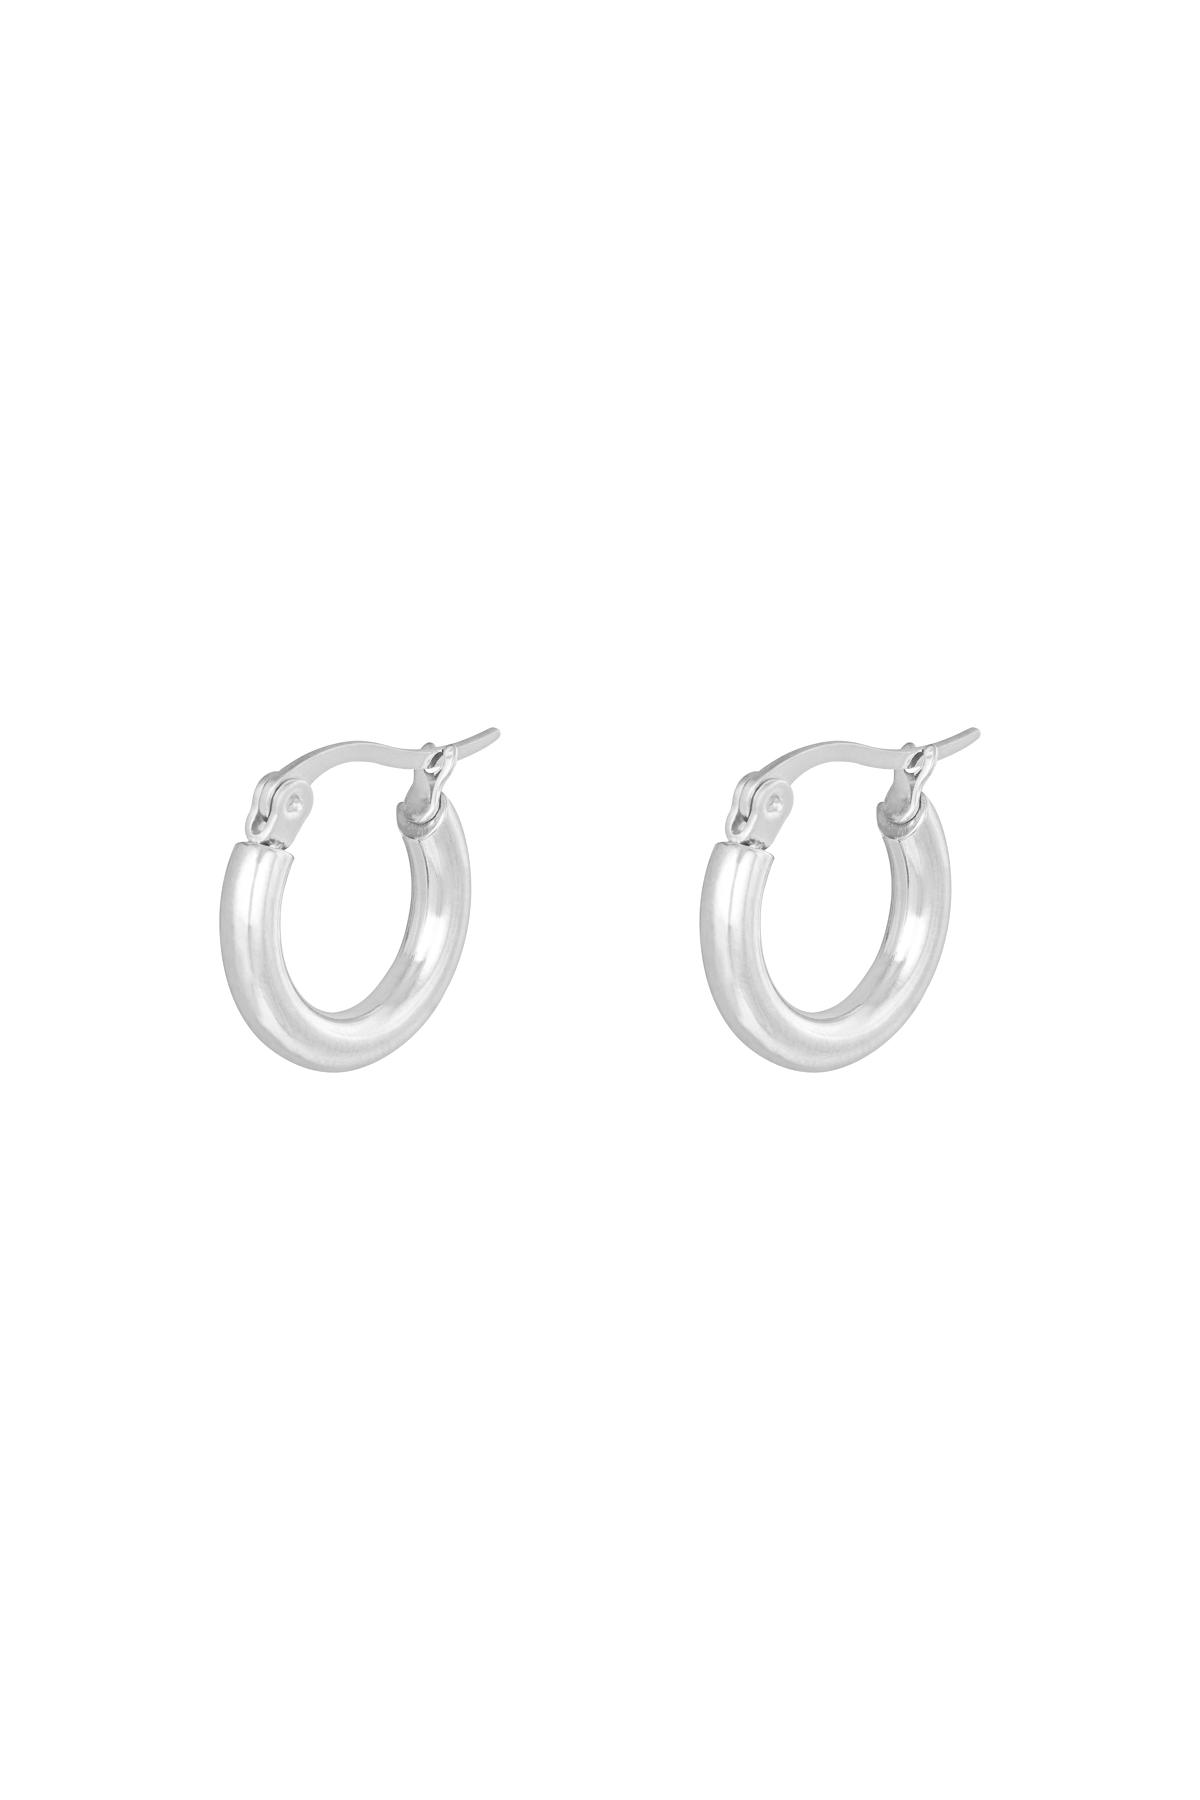 Earrings Hoops Smooth 15 mm Silver Stainless Steel